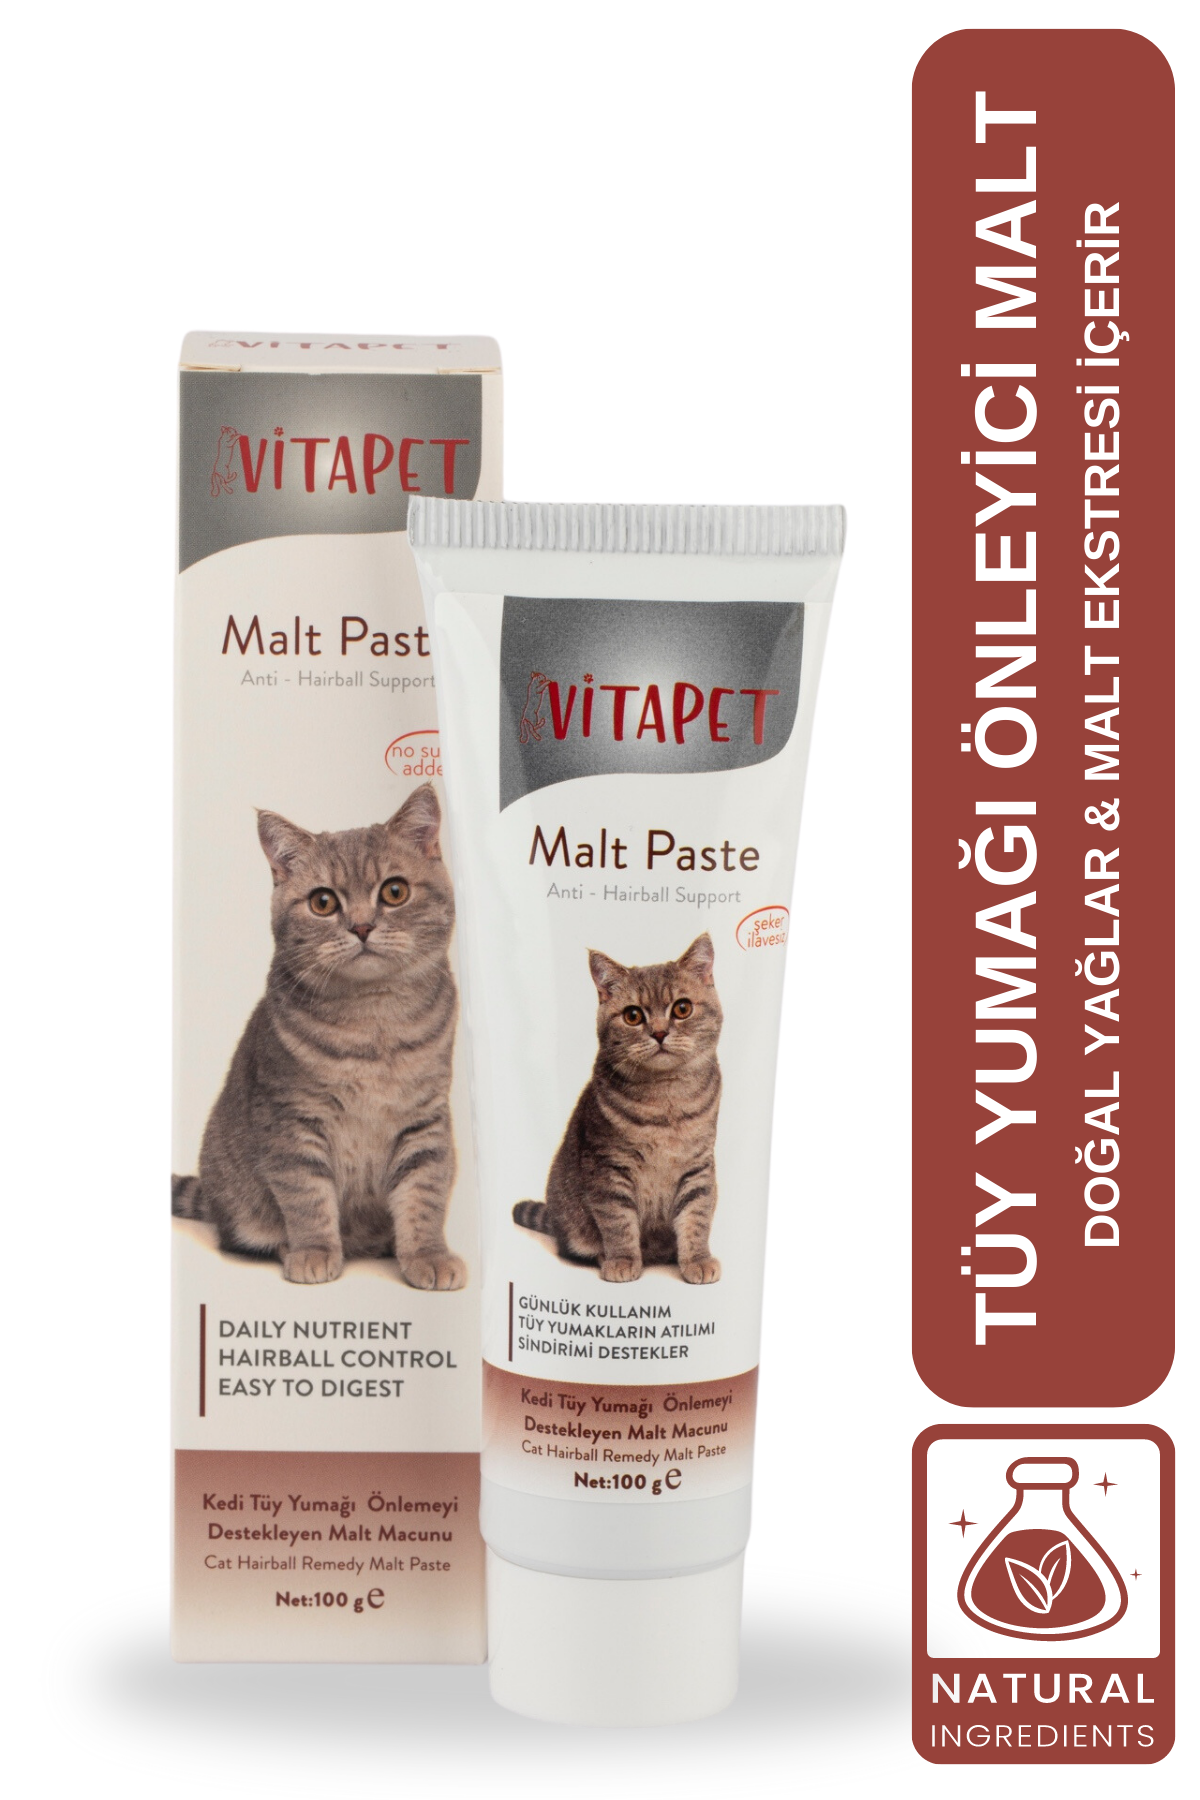 Vitapet Malt Paste 100g (Kediler İçin Tüy Yumağı Önleyici Malt Macunu)